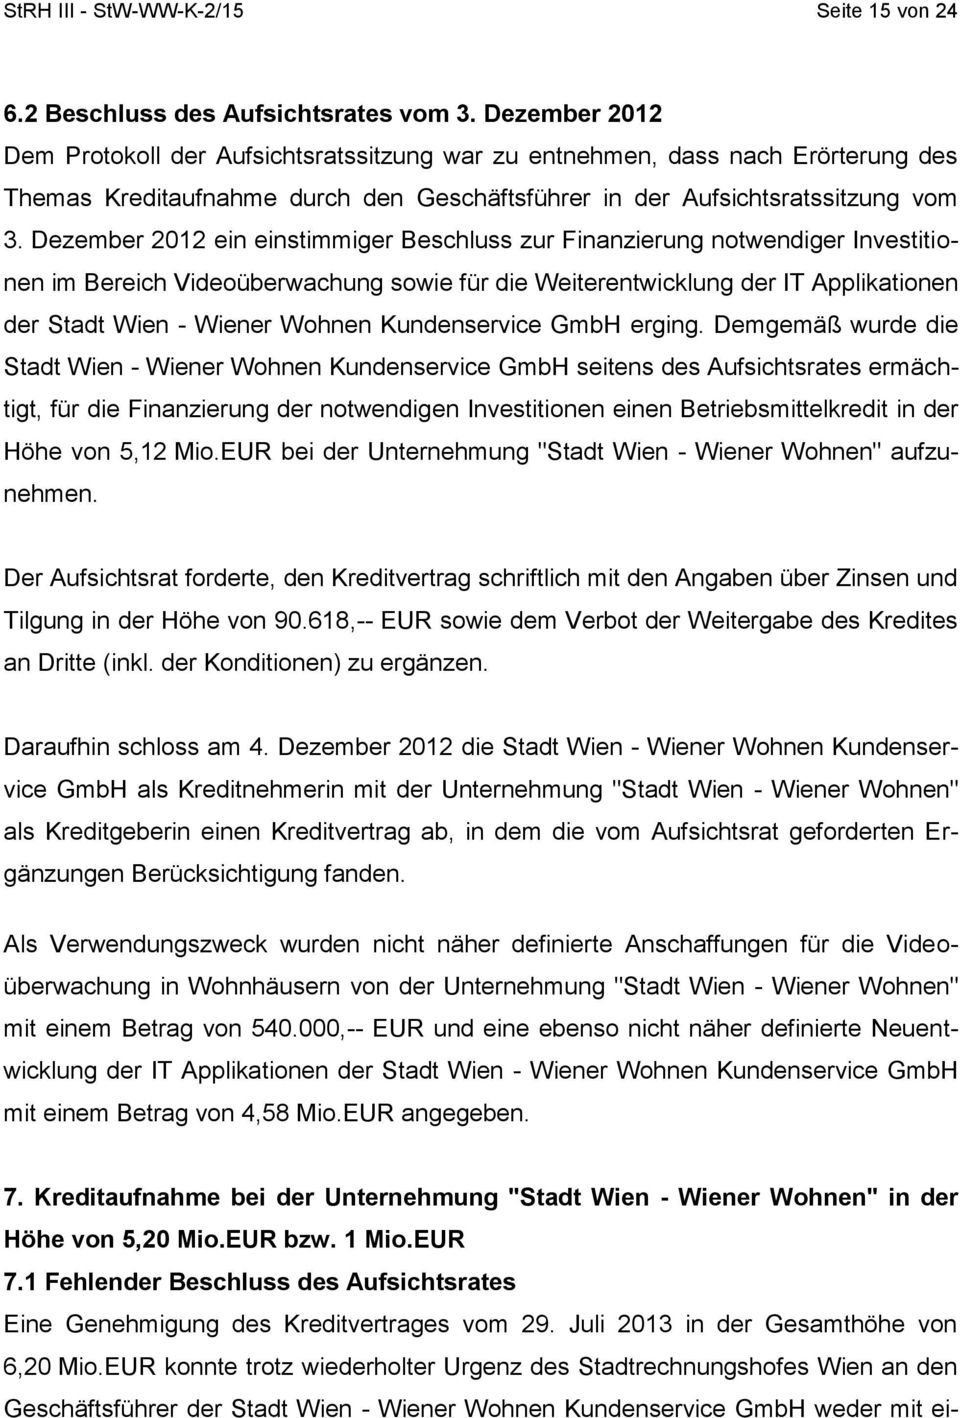 Dezember 2012 ein einstimmiger Beschluss zur Finanzierung notwendiger Investitionen im Bereich Videoüberwachung sowie für die Weiterentwicklung der IT Applikationen der Stadt Wien - Wiener Wohnen